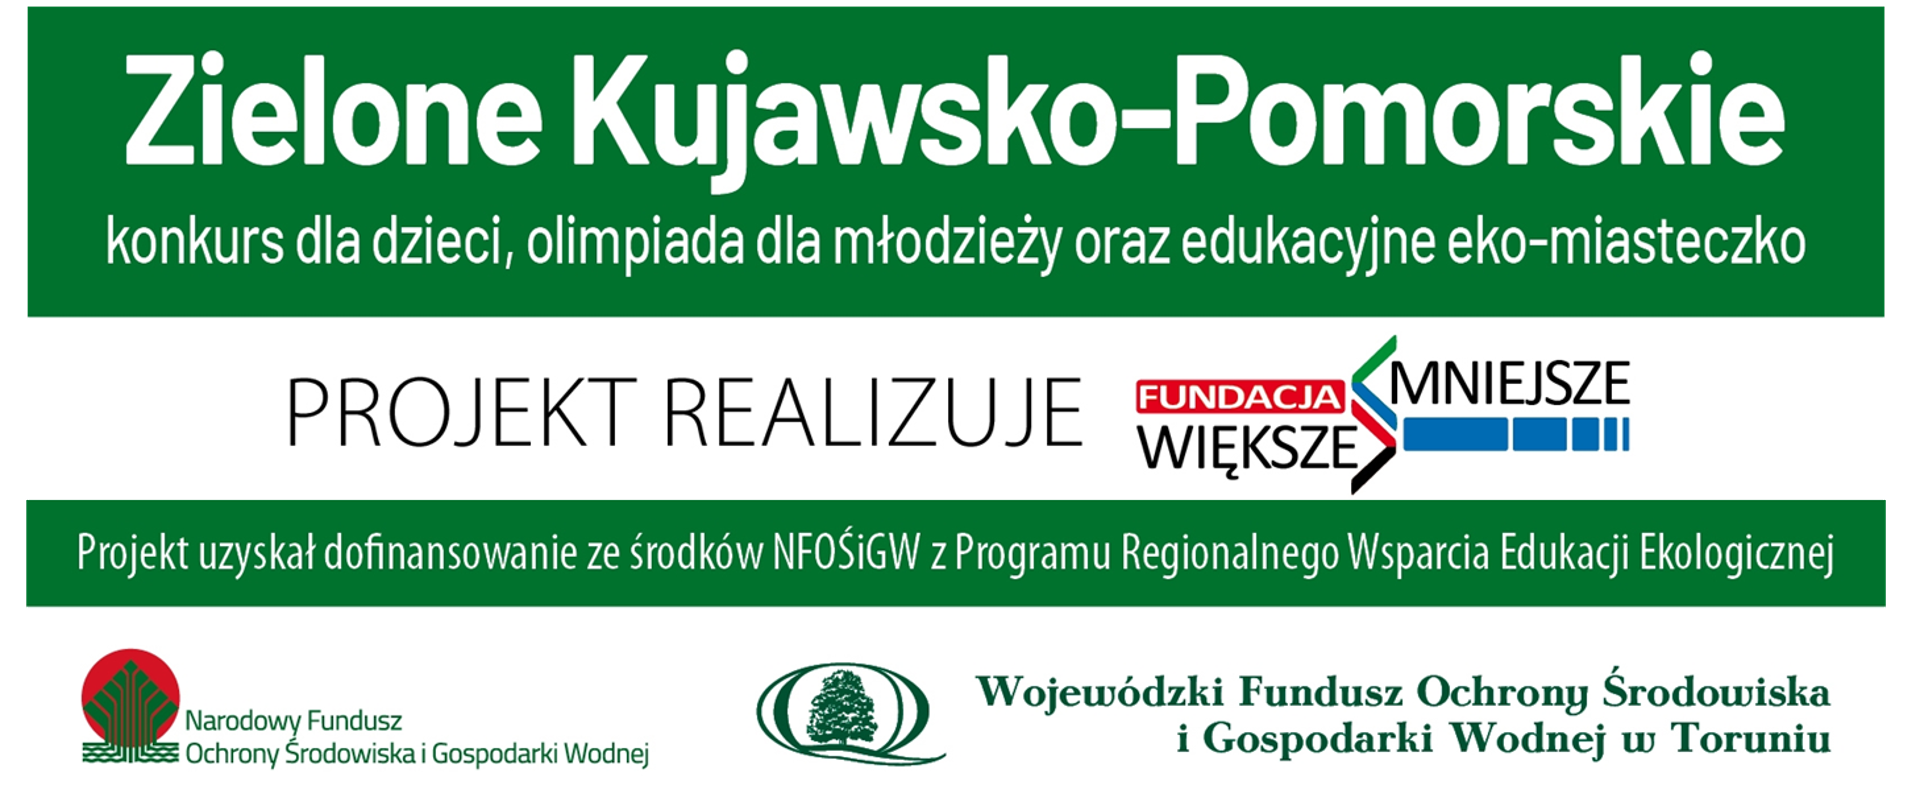 Zielone Kujawsko-Pomorskie – konkurs dla dzieci, olimpiada dla młodzieży i edukacyjne eko-miasteczko - logotyp